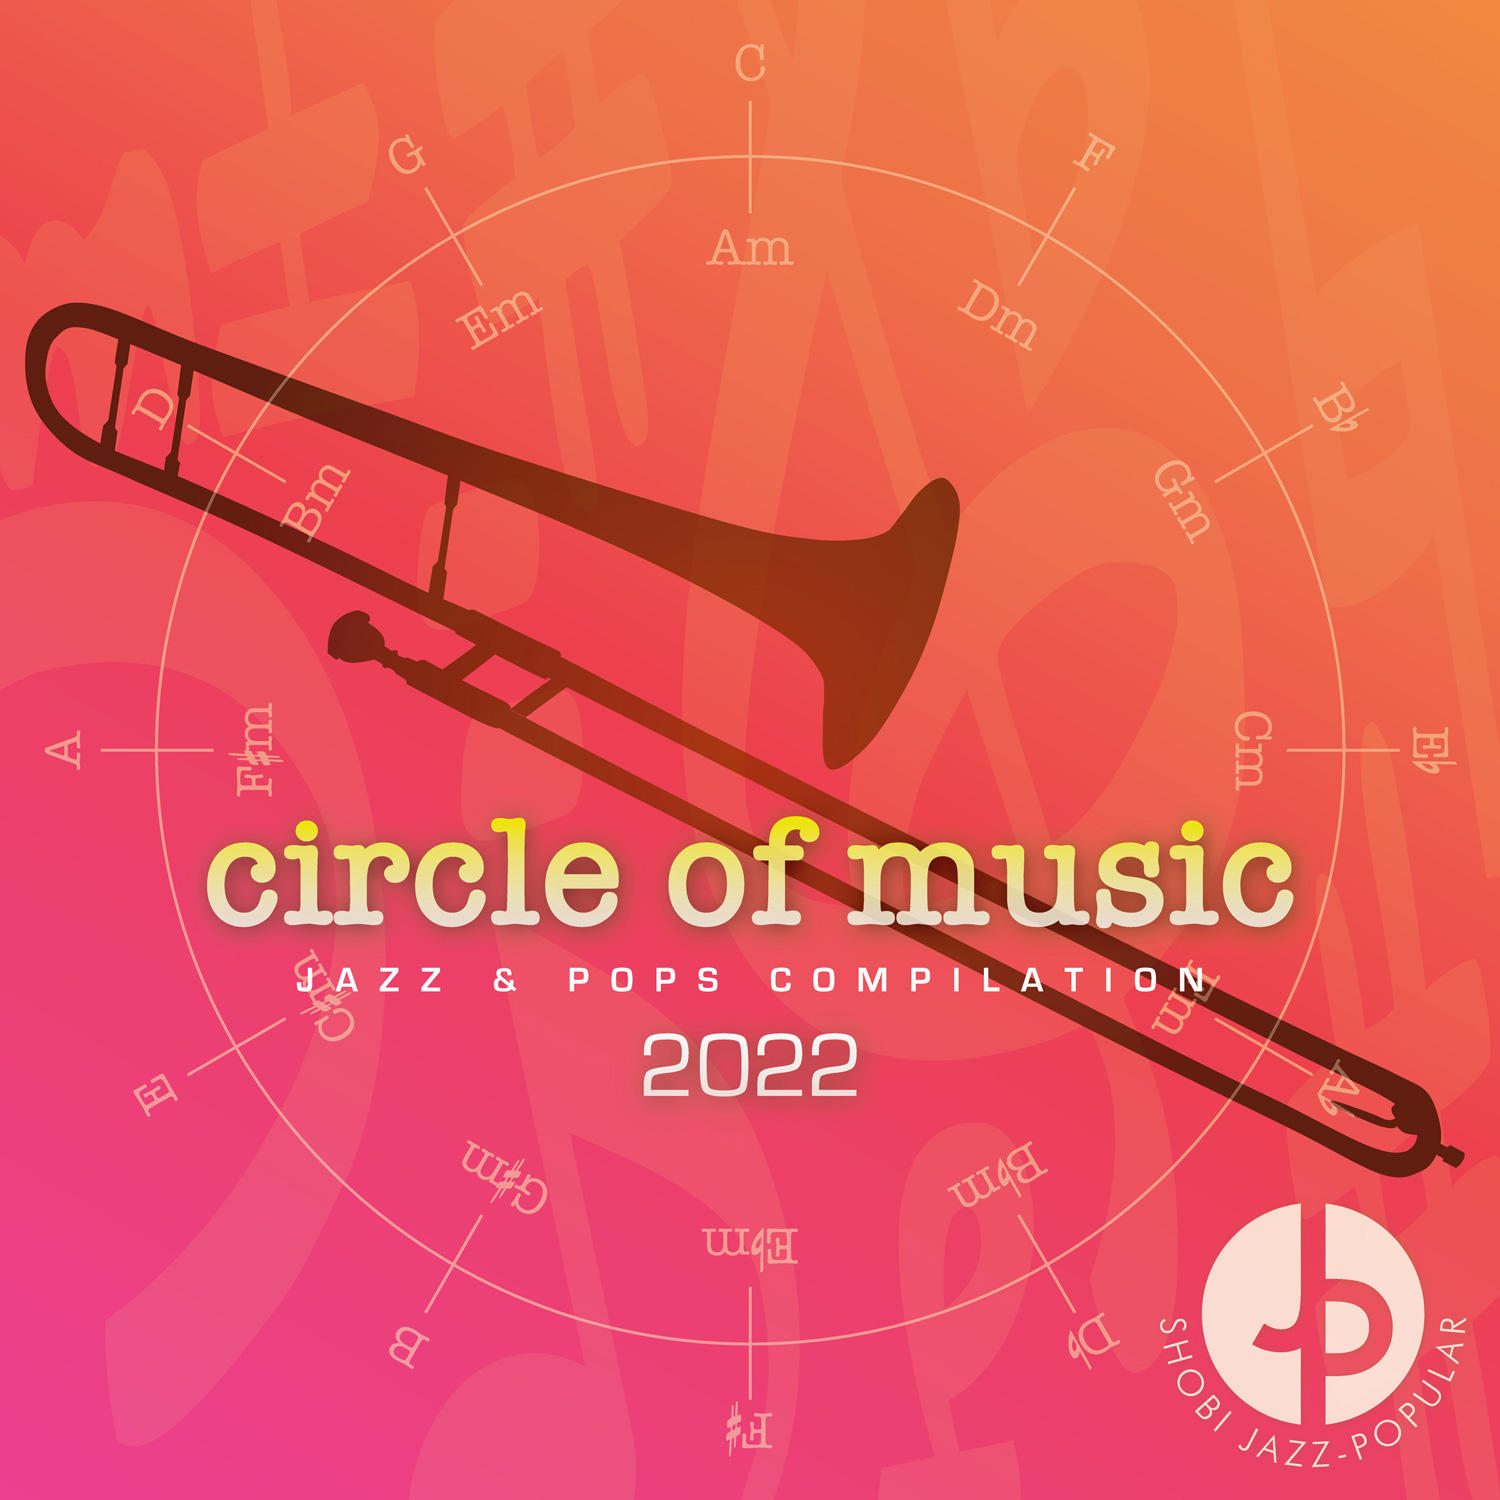 ジャズ・ポピュラー学科の2021年度卒業生によるオリジナル曲を収録したコンピレーションアルバム『circle of music 2022』が完成しました